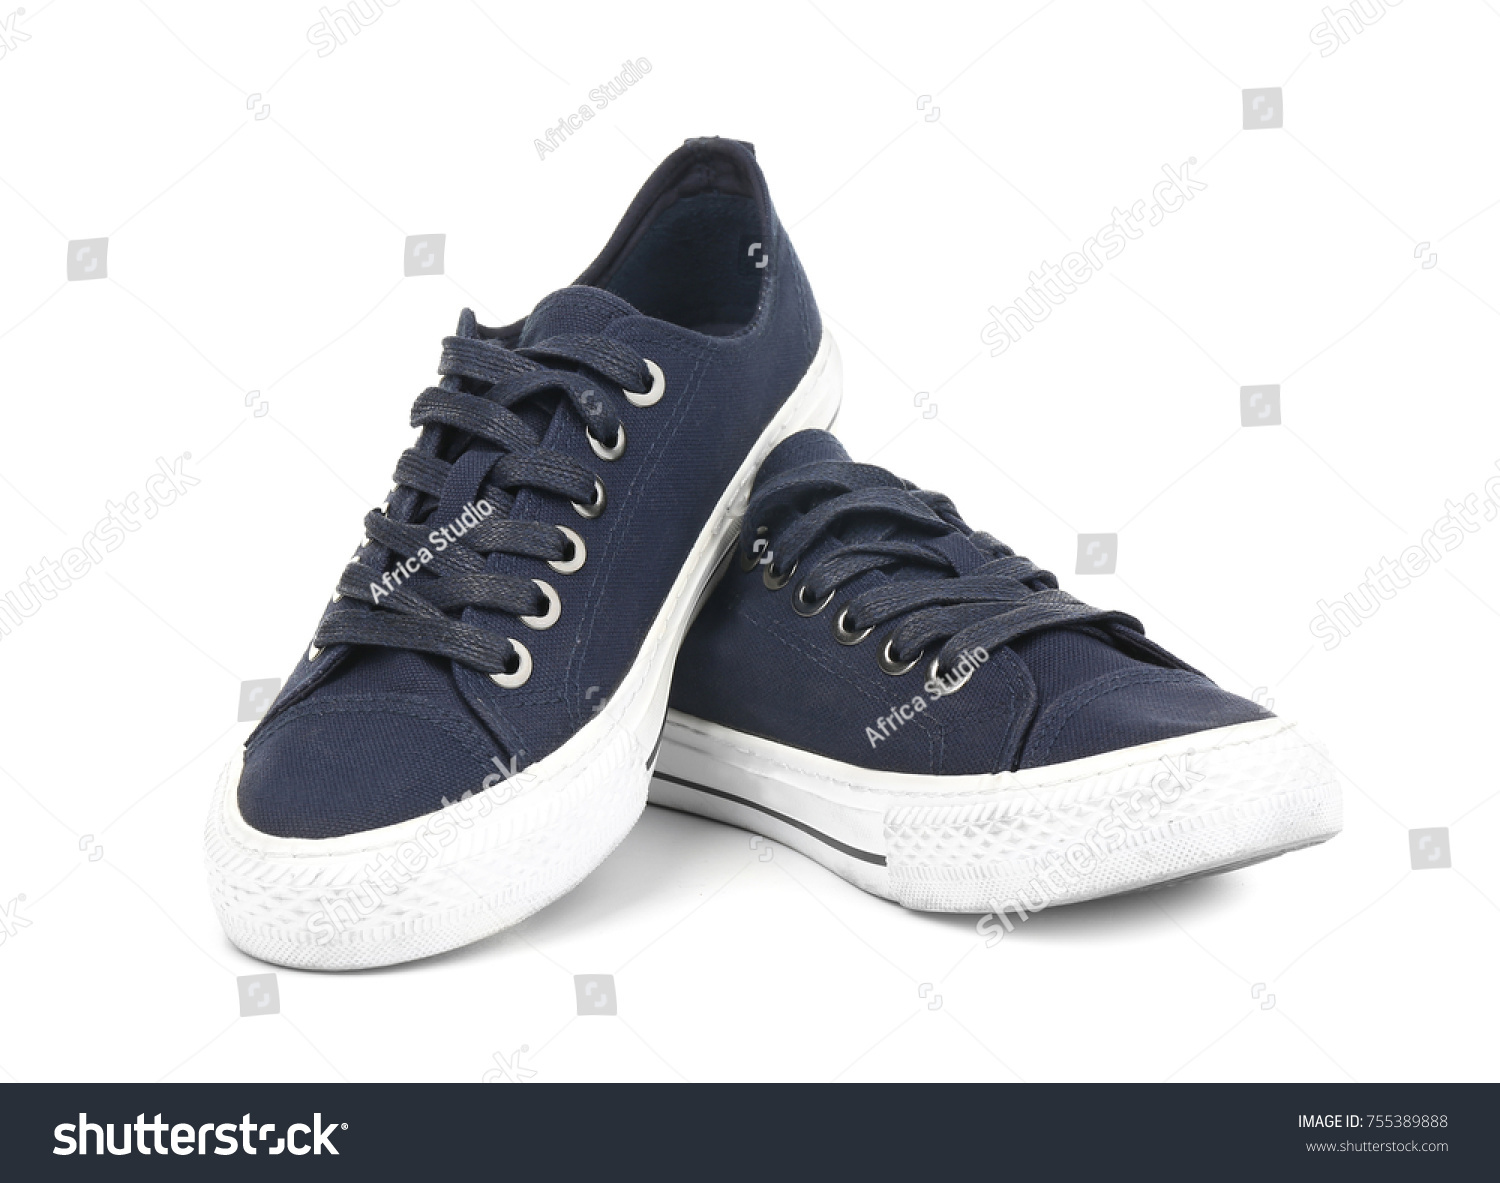 dark tennis shoes